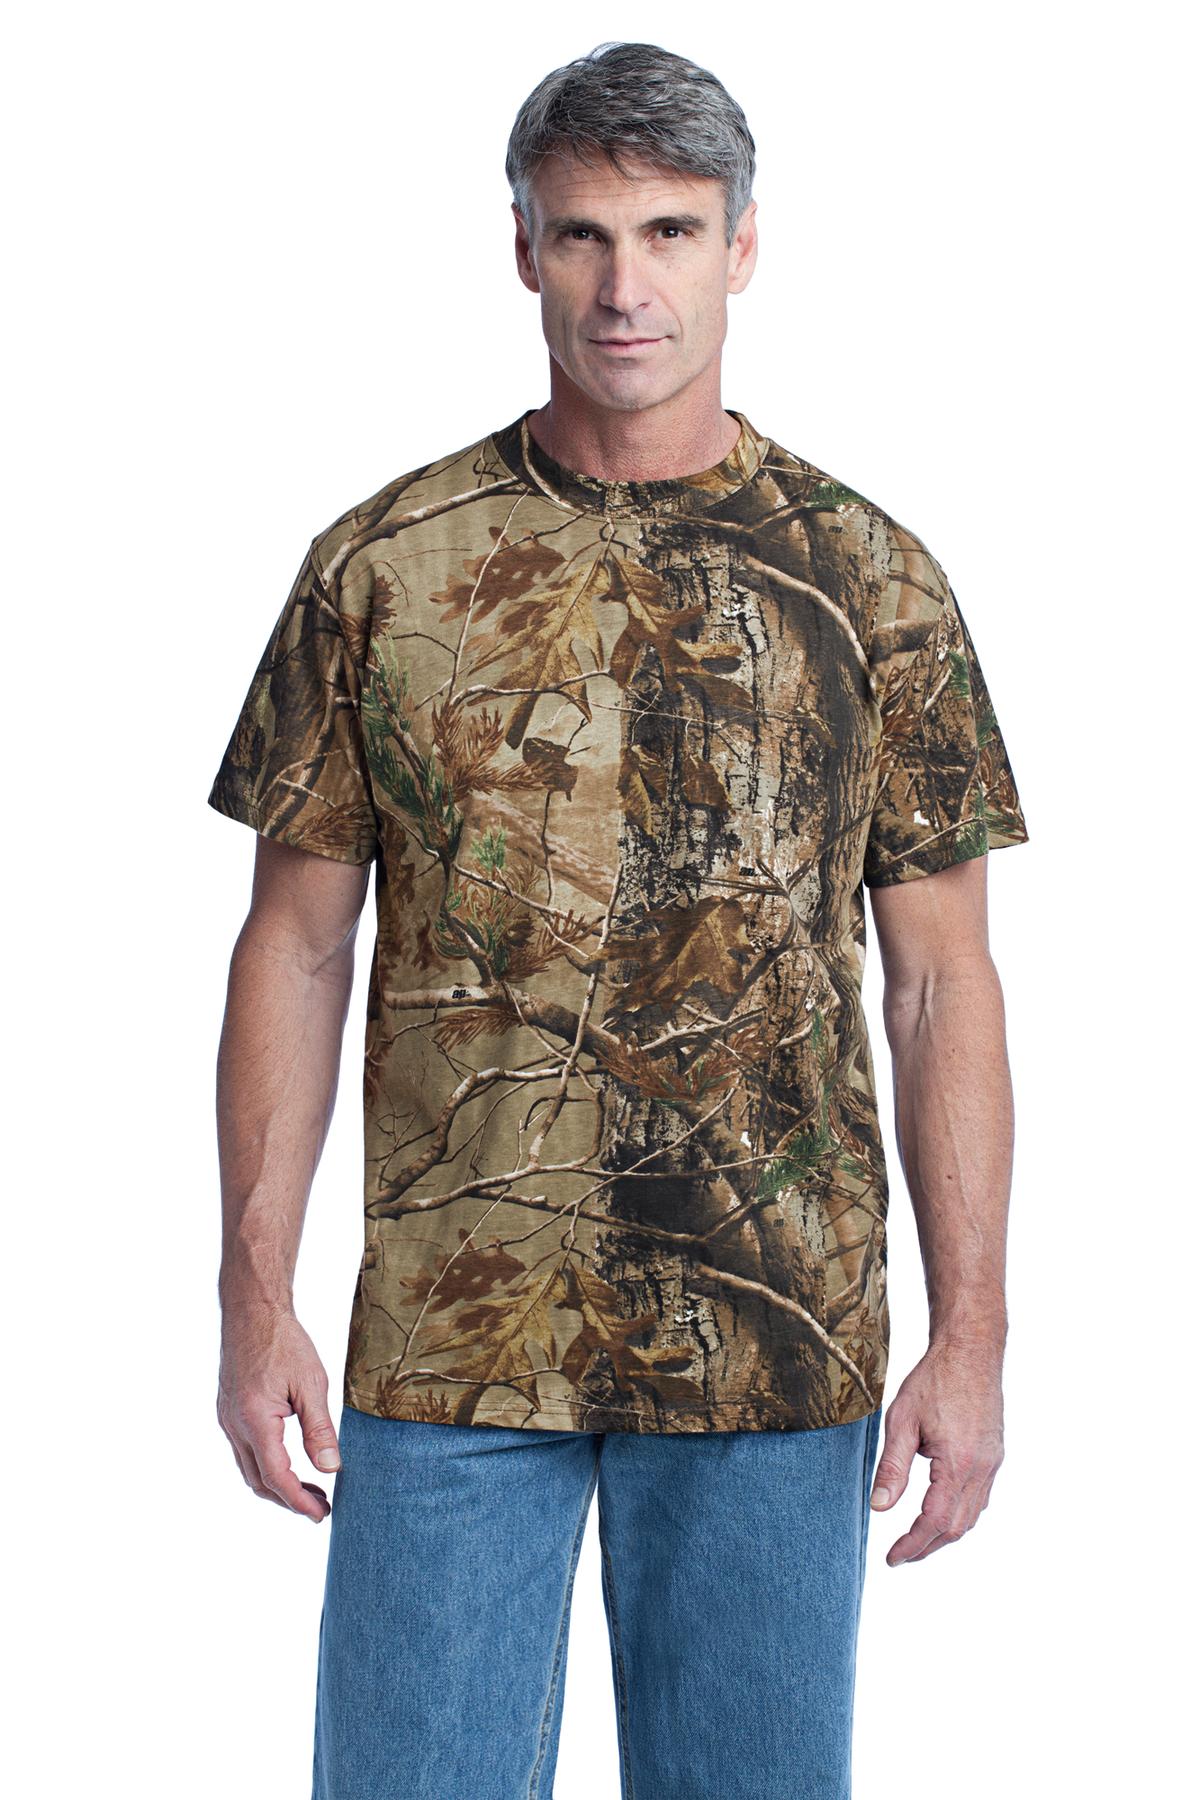 https://images.shirtspace.com/fullsize/%2B4mQNqAsaSdB5nd%2FfEST0w%3D%3D/450738/10998-russell-outdoors-np0021r-realtree-explorer-100-cotton-t-shirt-front-realtree-ap.jpg